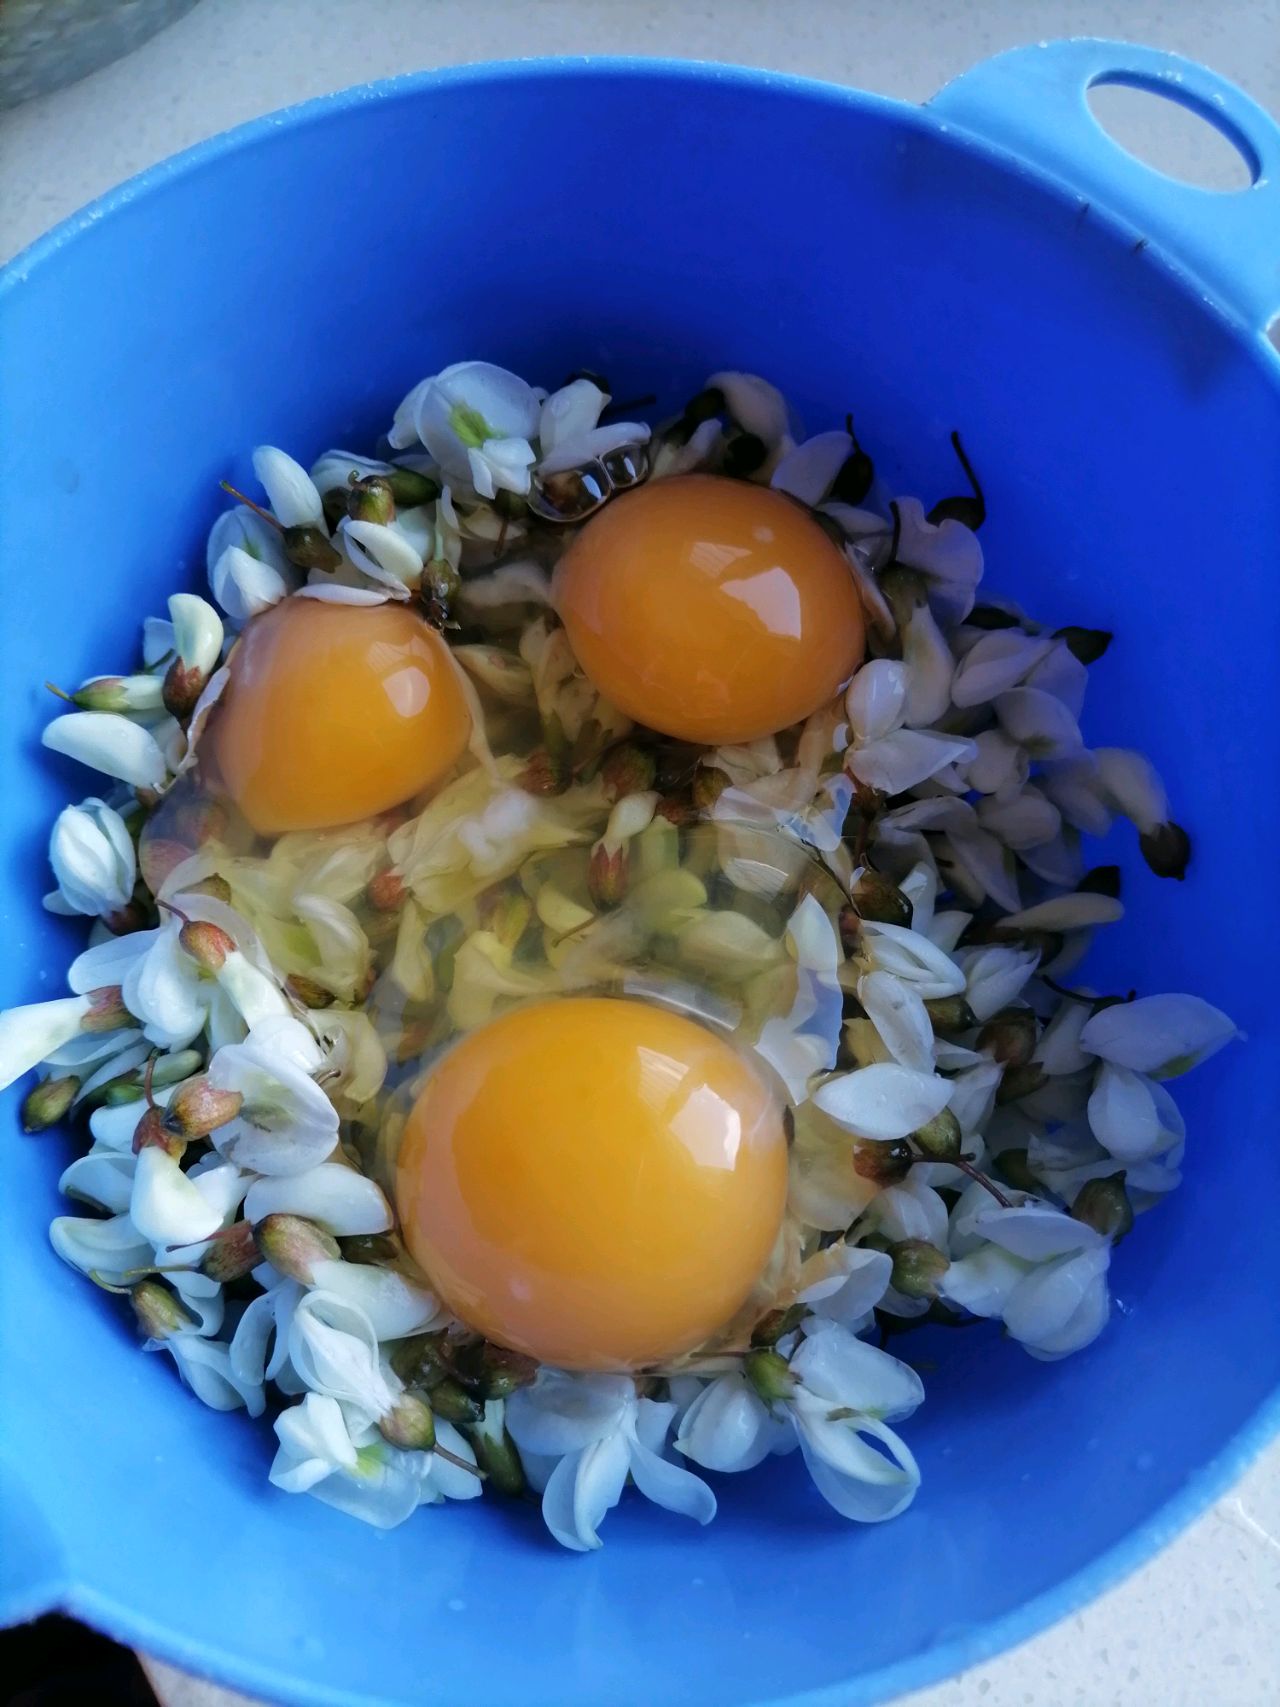 槐花系列之槐花鸡蛋汤,槐花系列之槐花鸡蛋汤的家常做法 - 美食杰槐花系列之槐花鸡蛋汤做法大全